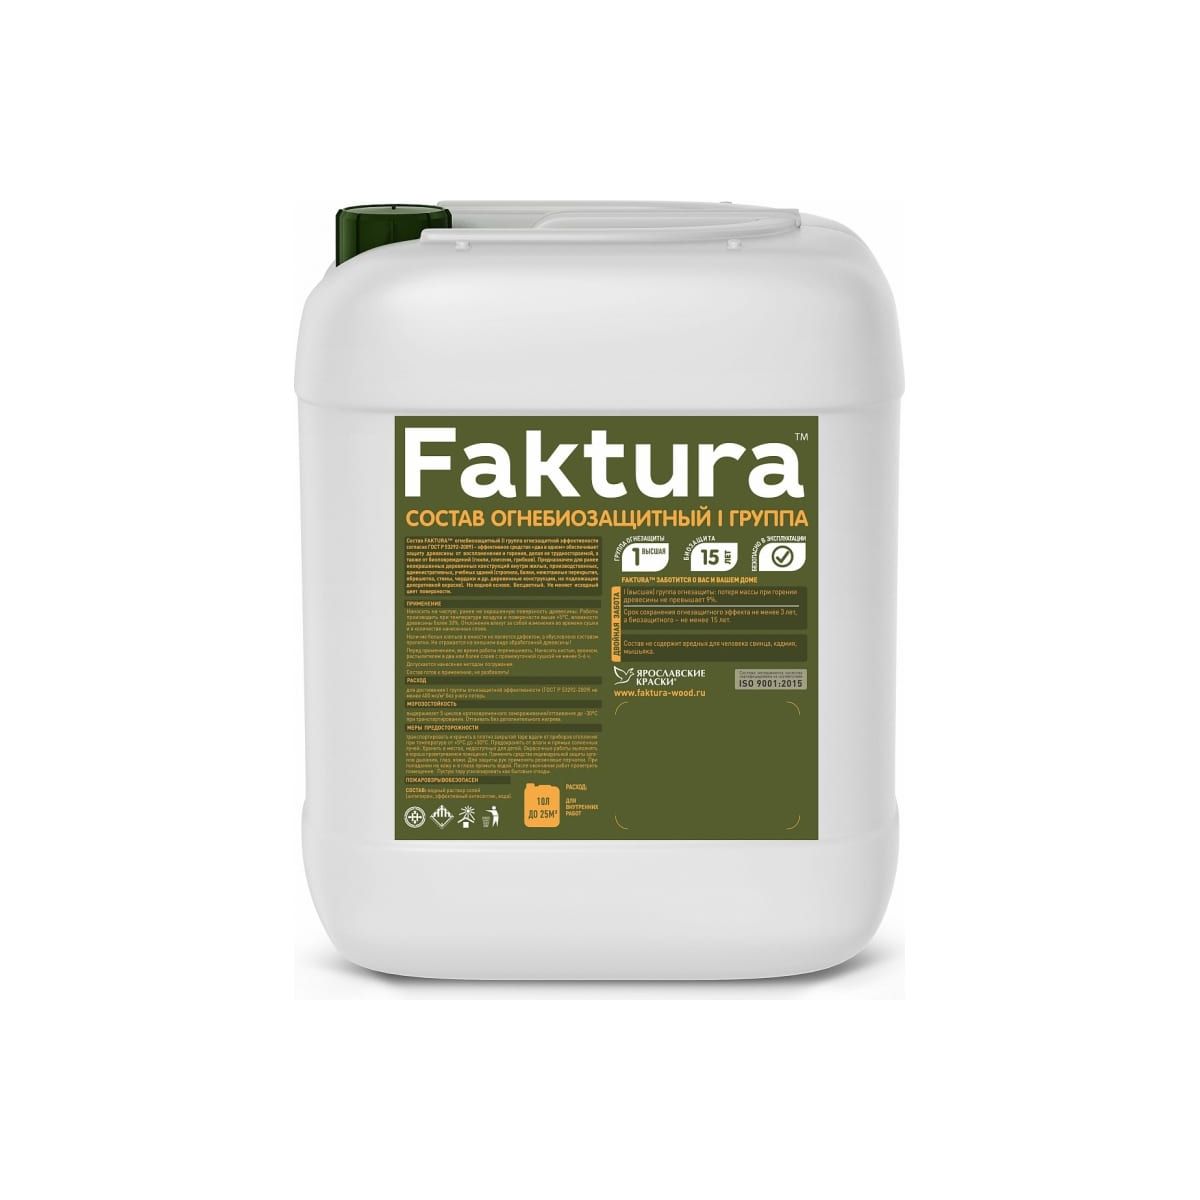 Состав огнебиозащитный Faktura I группа, бесцветный, 10 л биоцидный состав для уничтожения жуков и личинок faktura